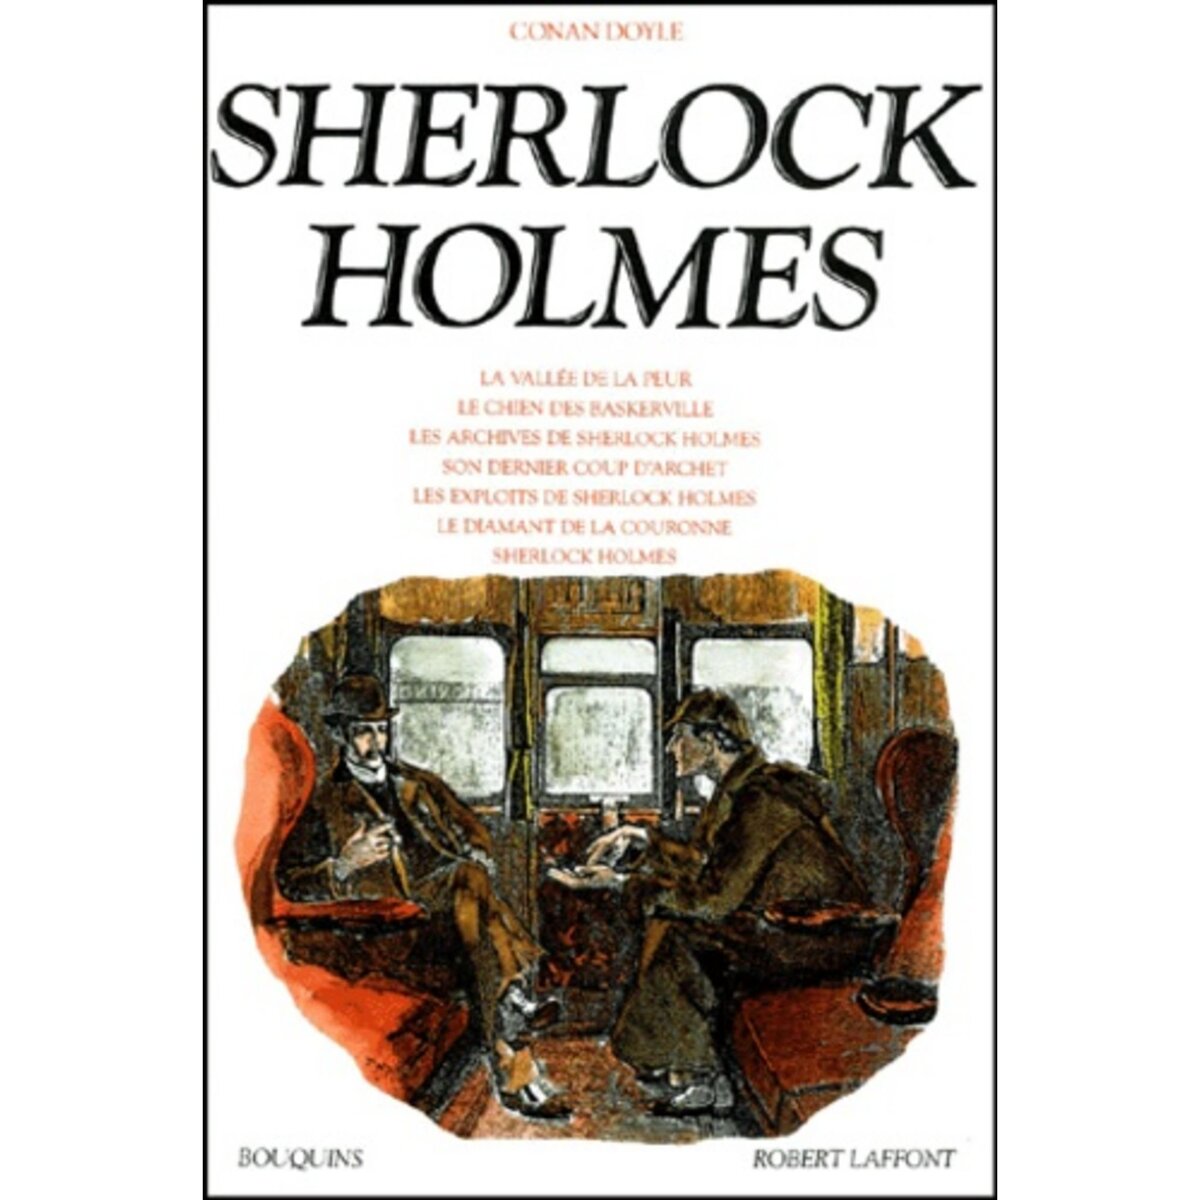  SHERLOCK HOLMES. TOME 2, Doyle Arthur Conan